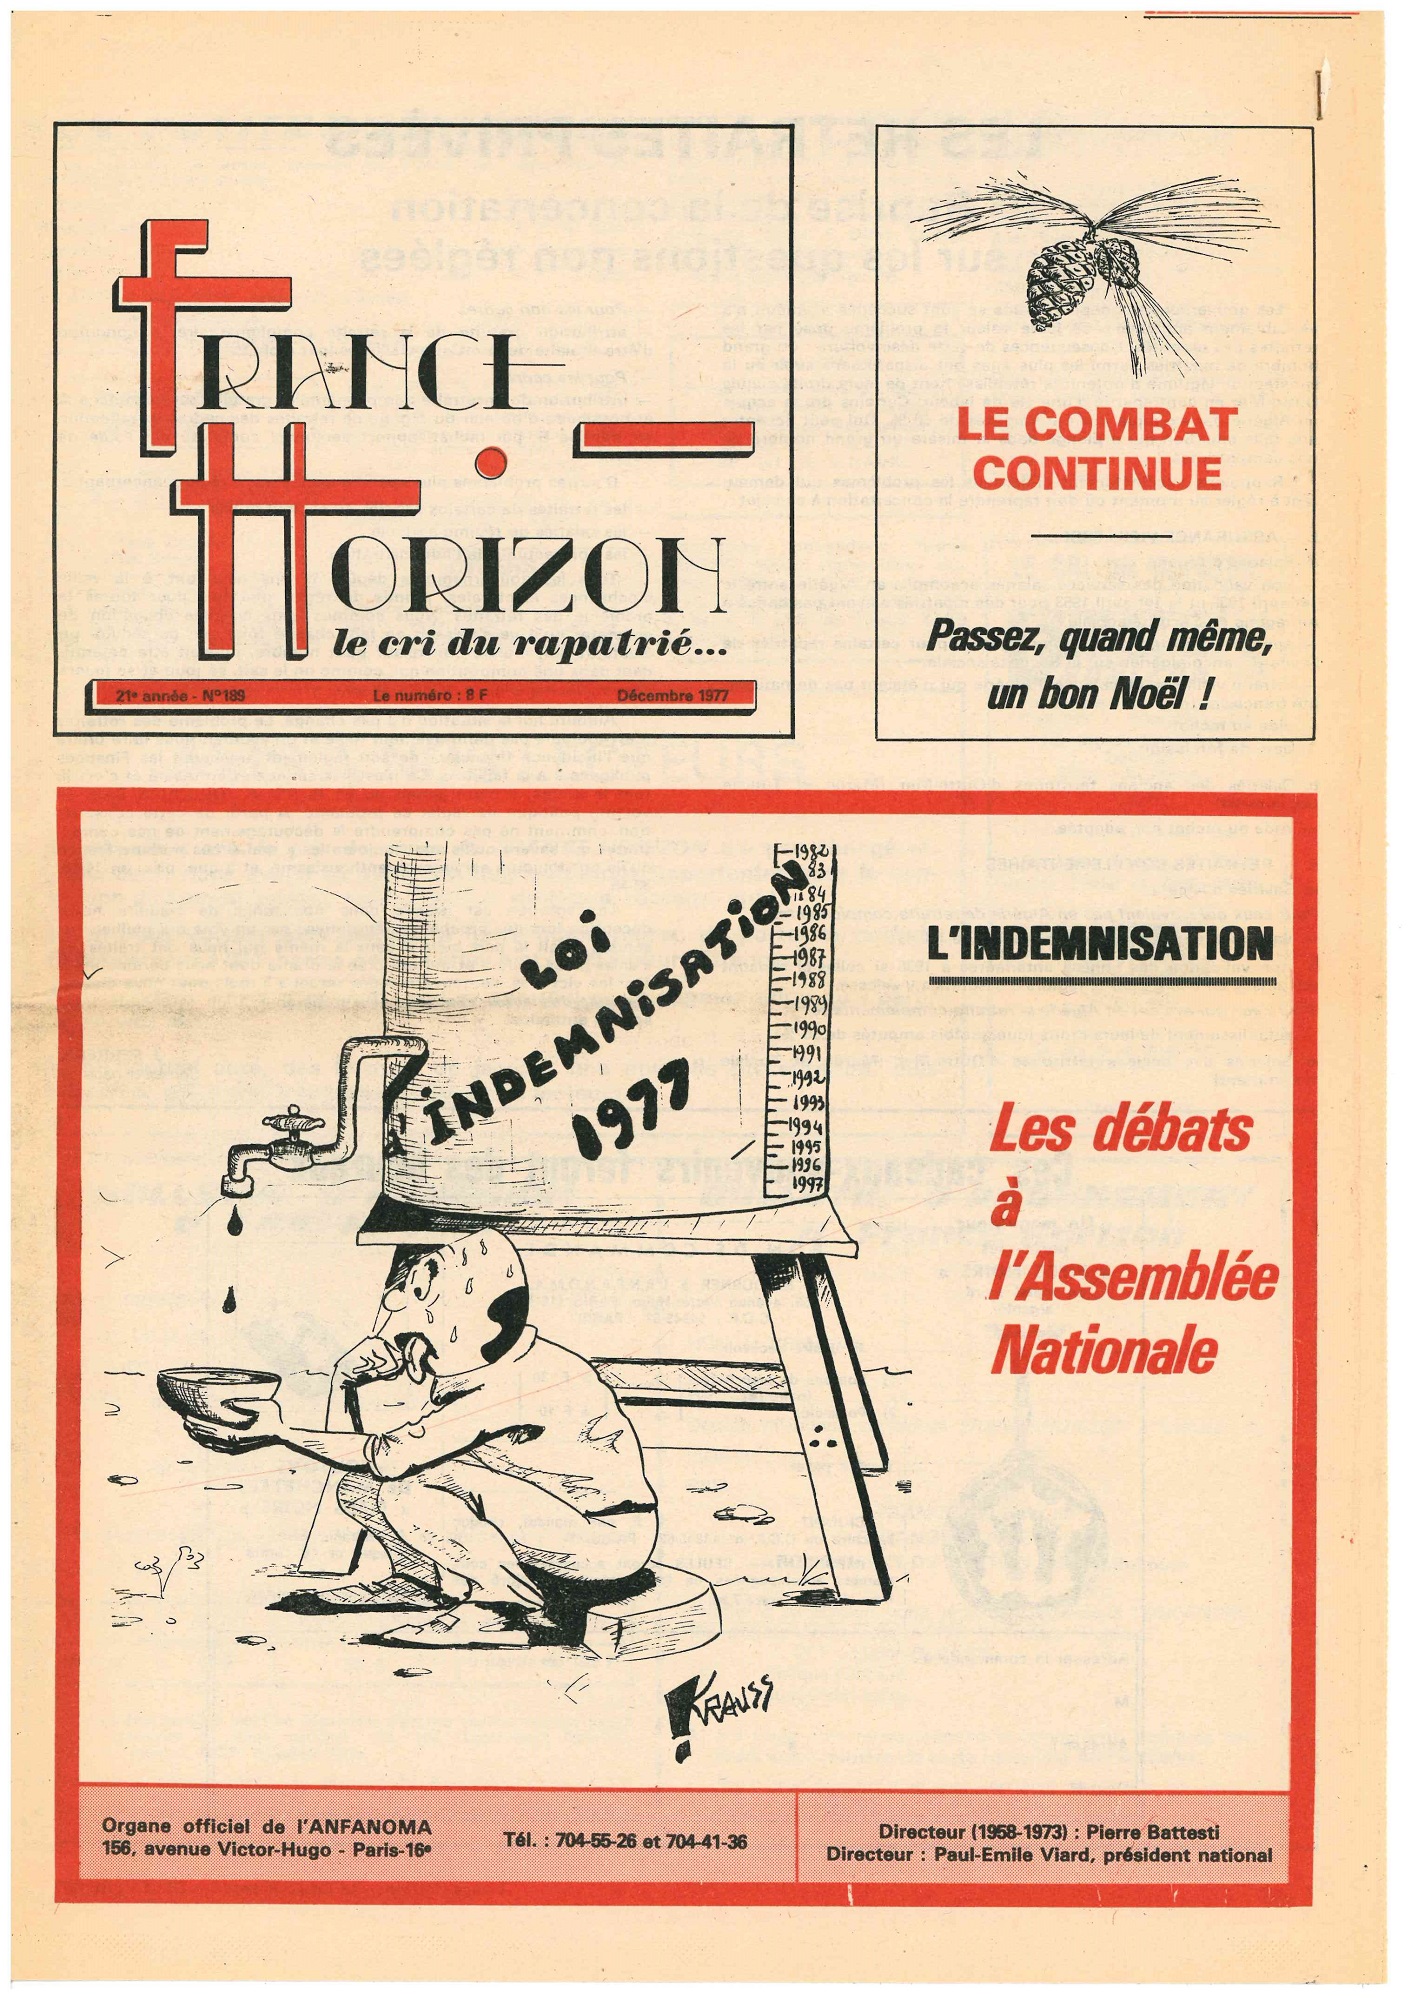 Une du périodique France-Horizon (n°185, décembre 1977), titrant sur l'indemnisation des rapatriés : "Lindemnisation, les débats à l'Assemblée nationale"